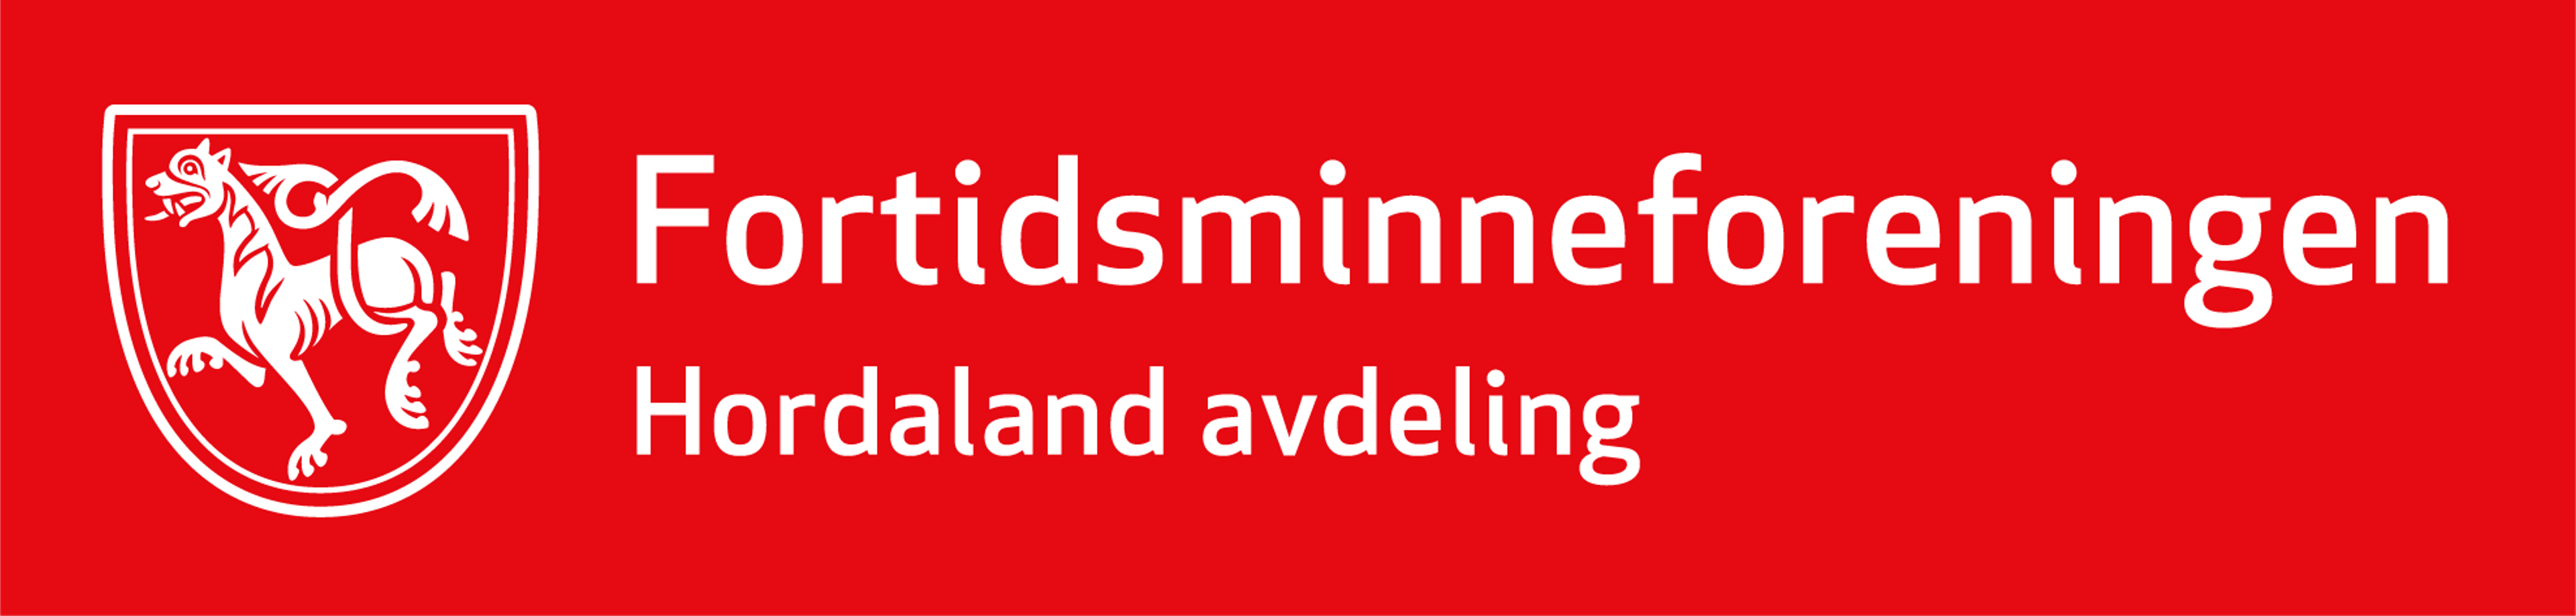 Logo på rød bakgrunn for Fortidsminneforeningen Hordaland